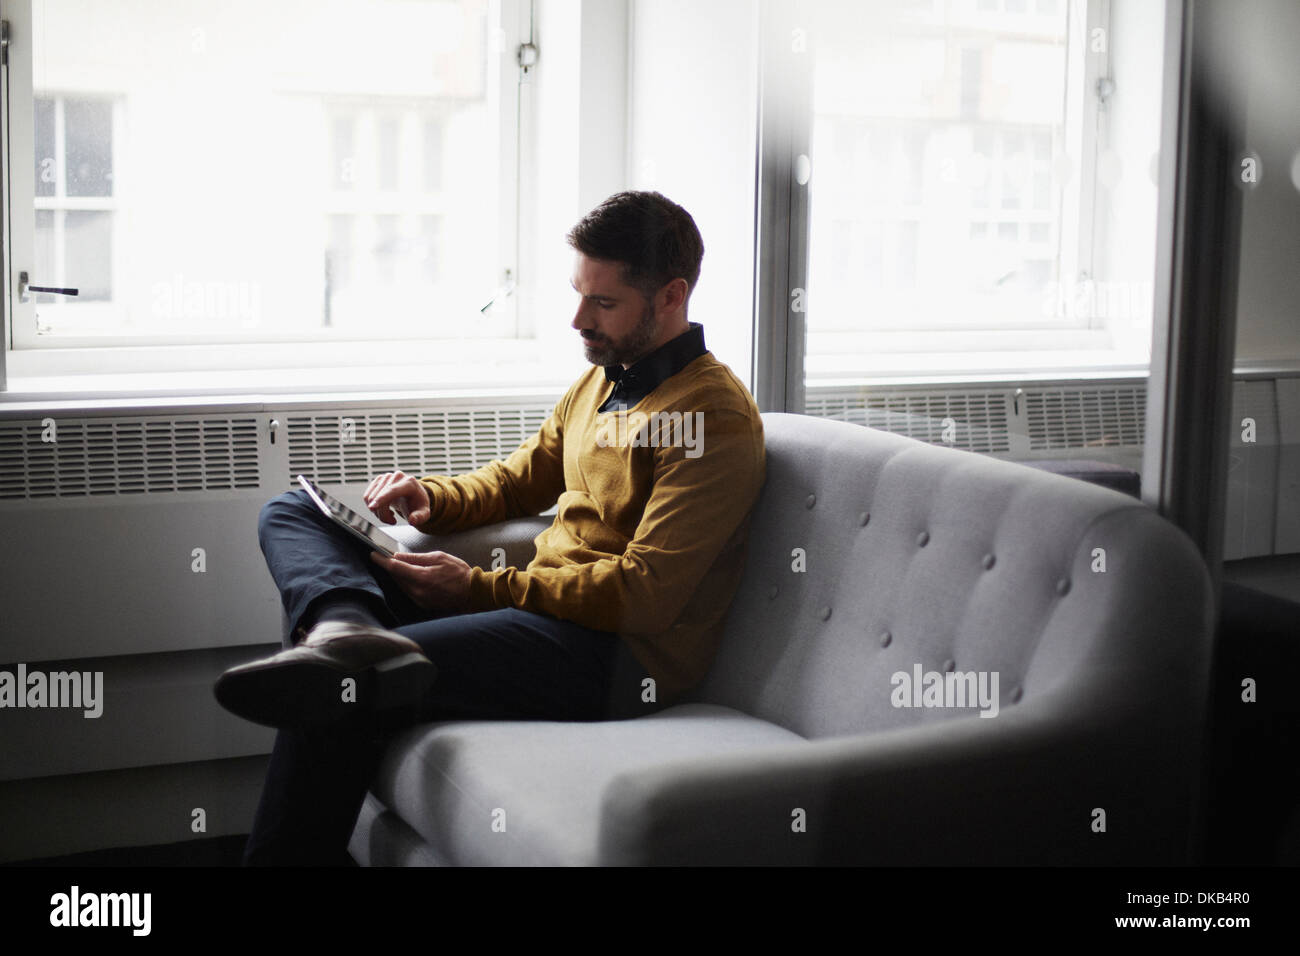 Businessman sitting on sofa using digital tablet Banque D'Images